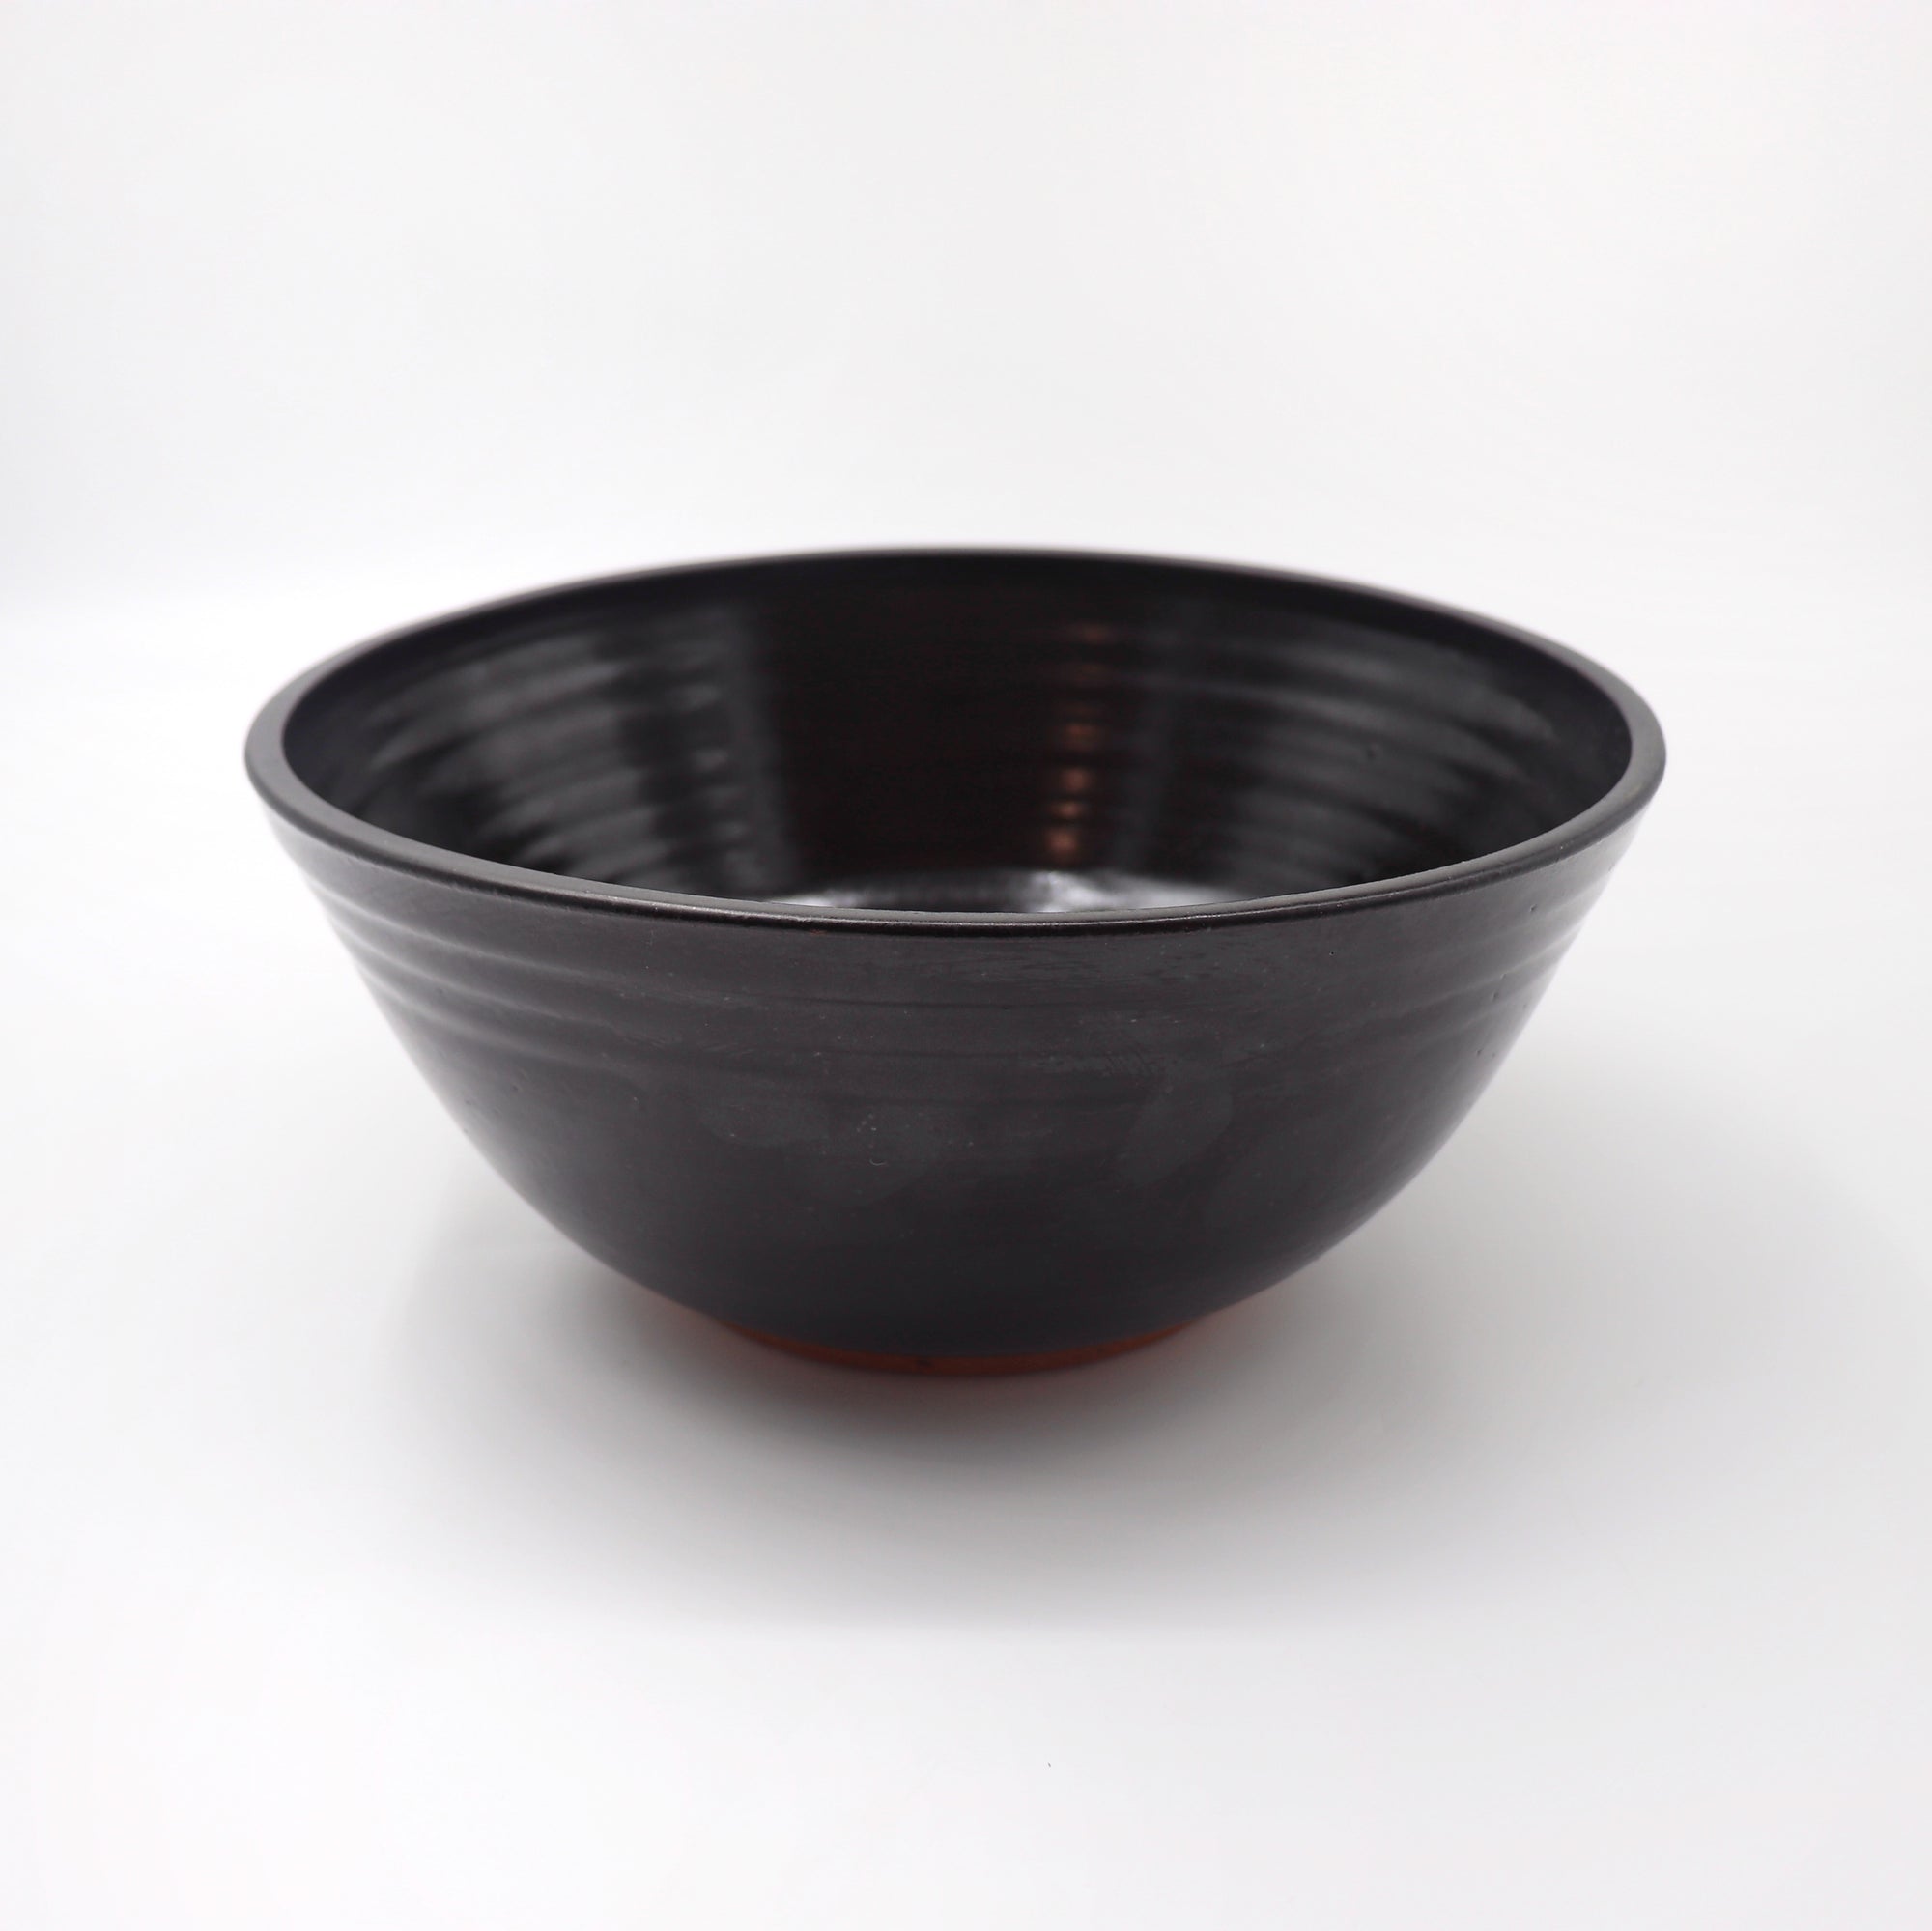 Black serving bowl in matte black.